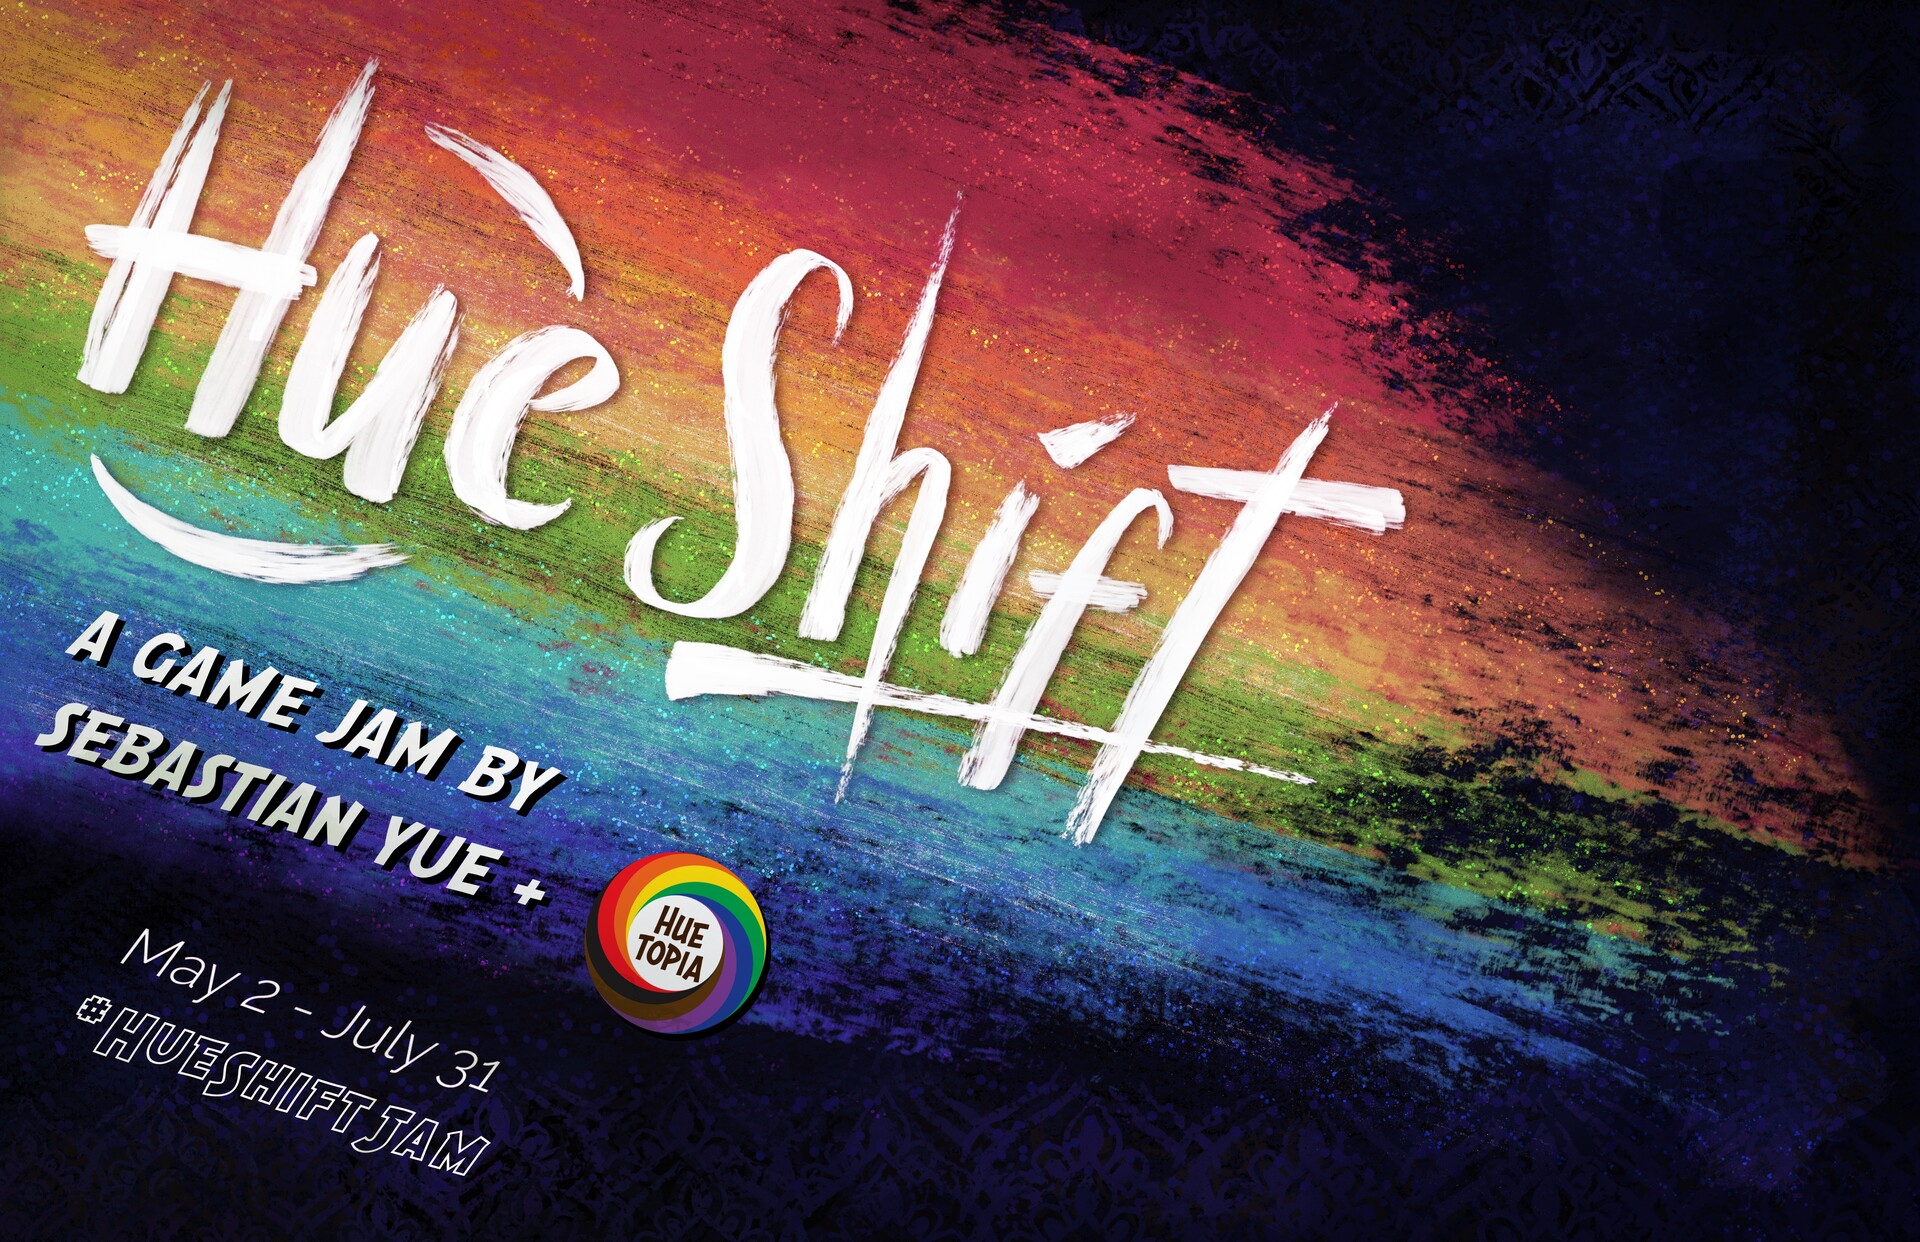 Title Design - Hue Shift Game Jam